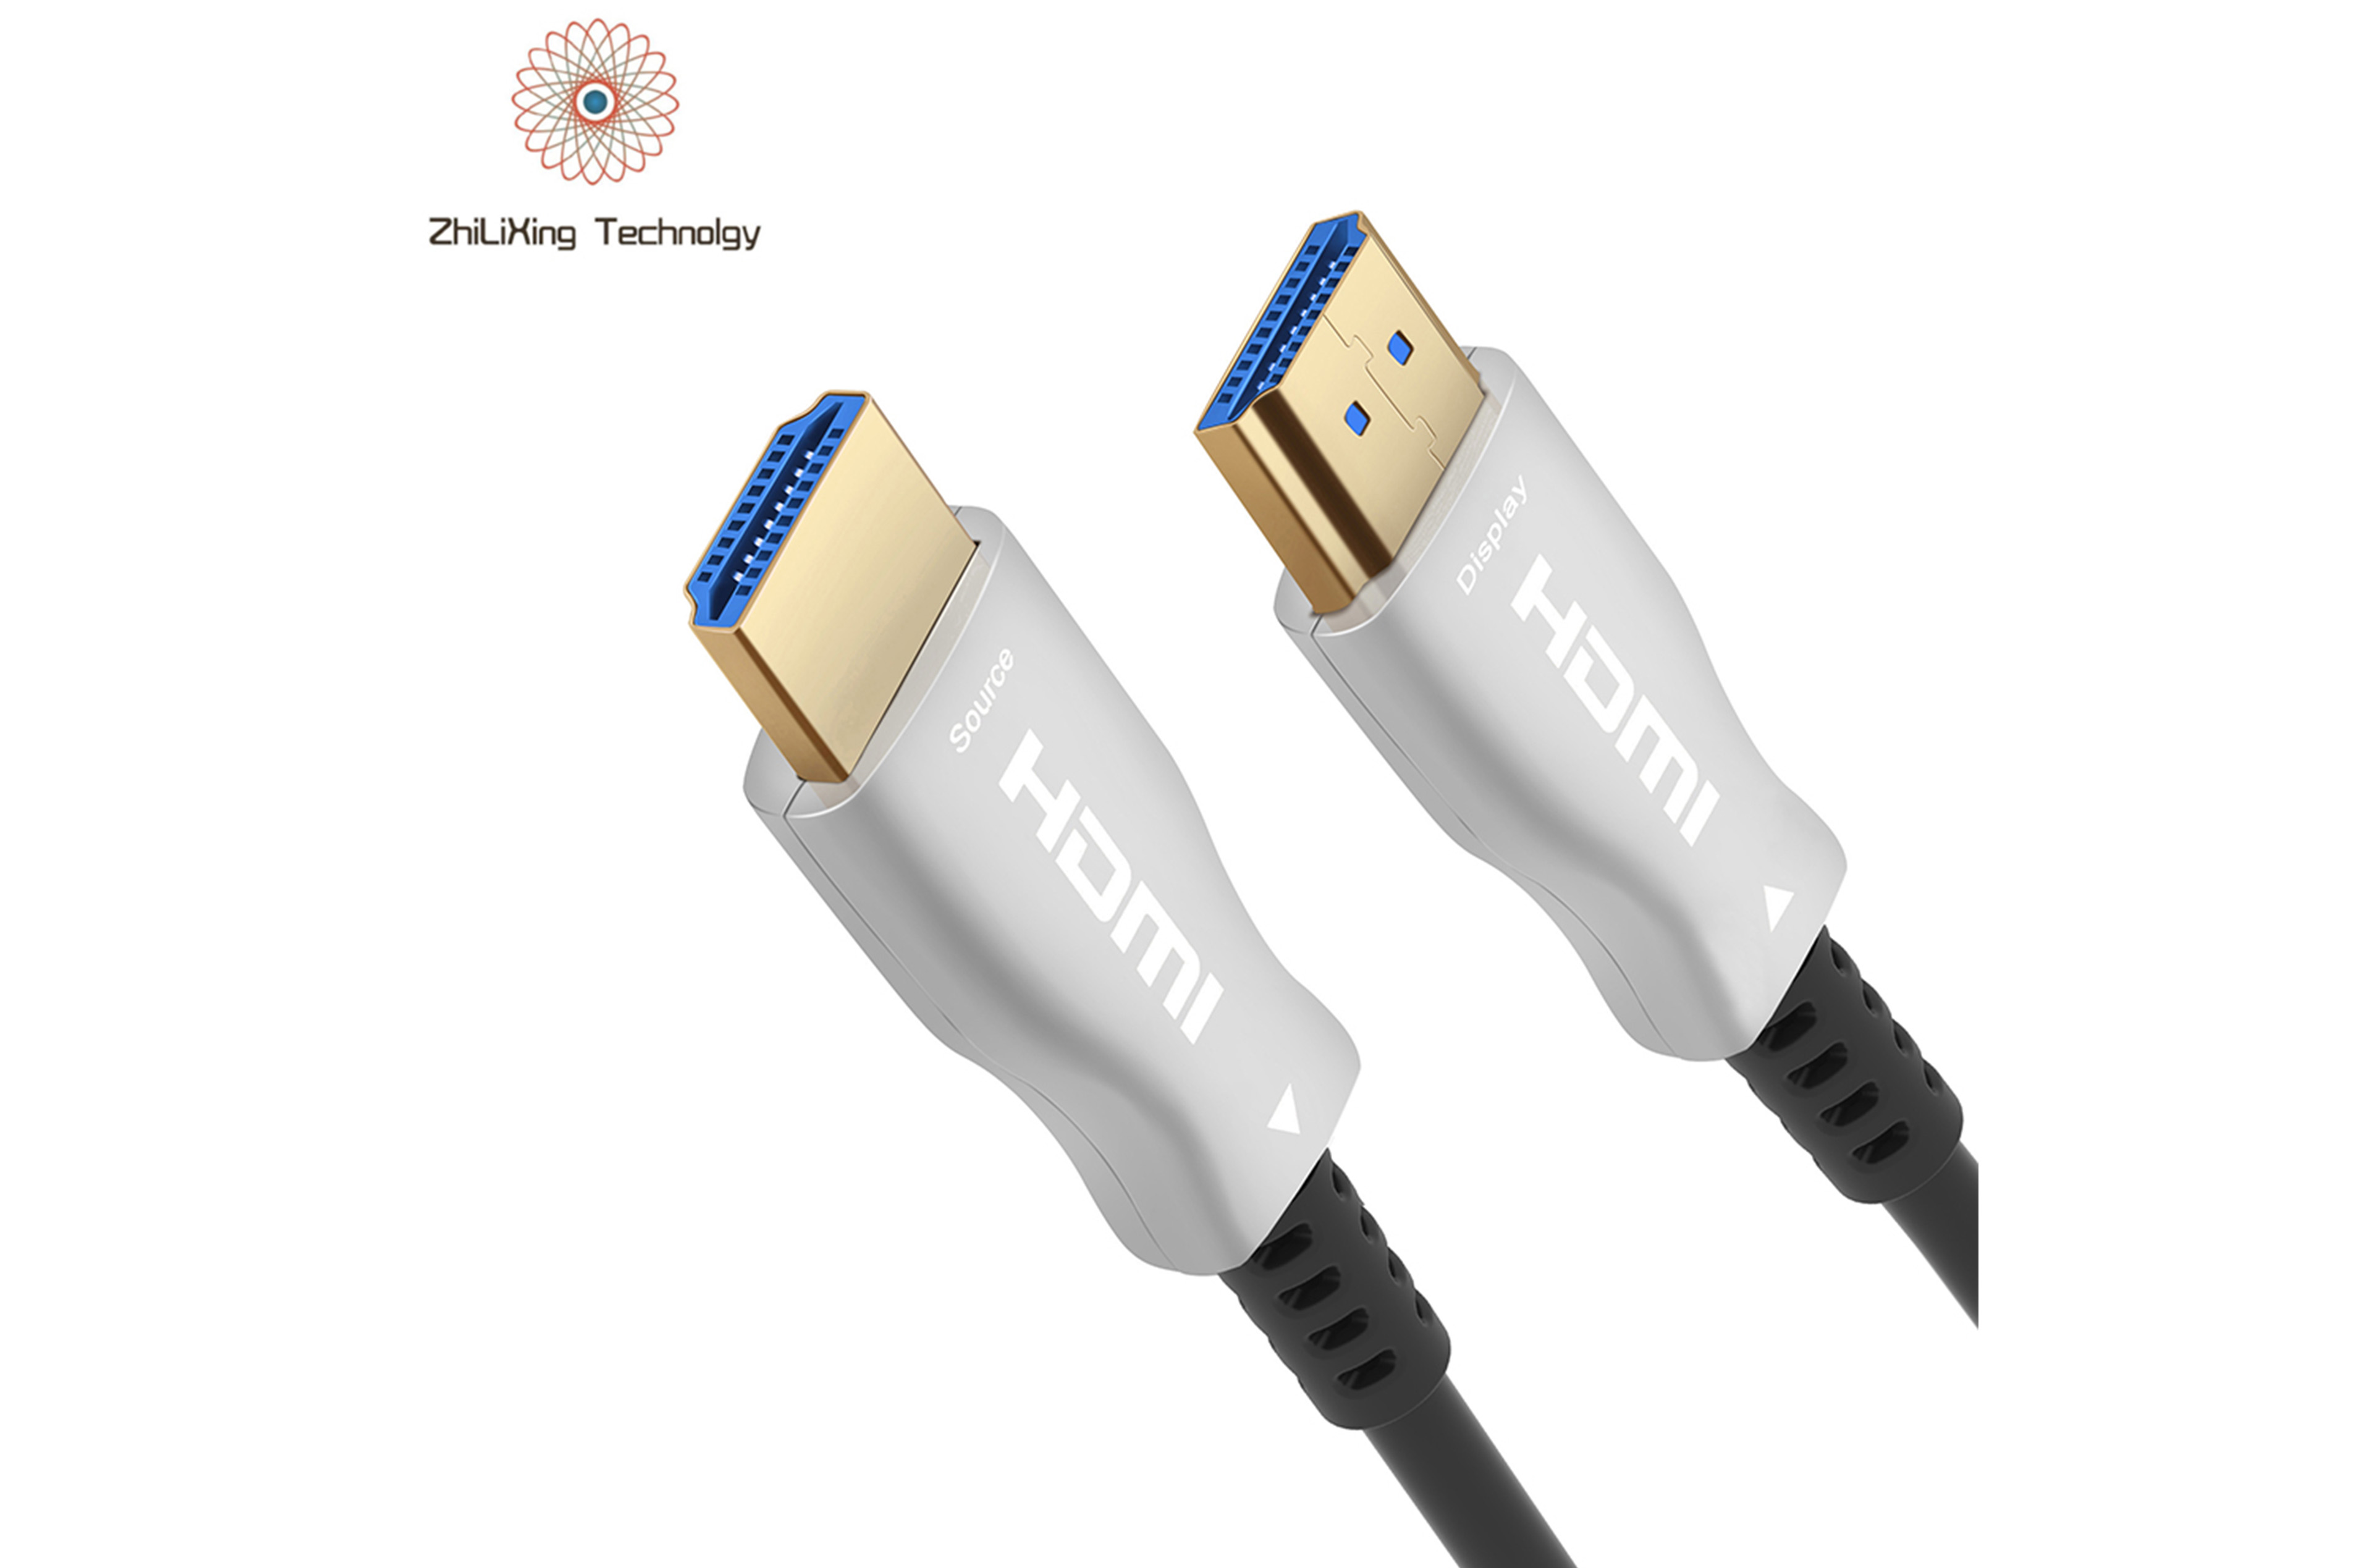 HDMI fiber optic cable-21026